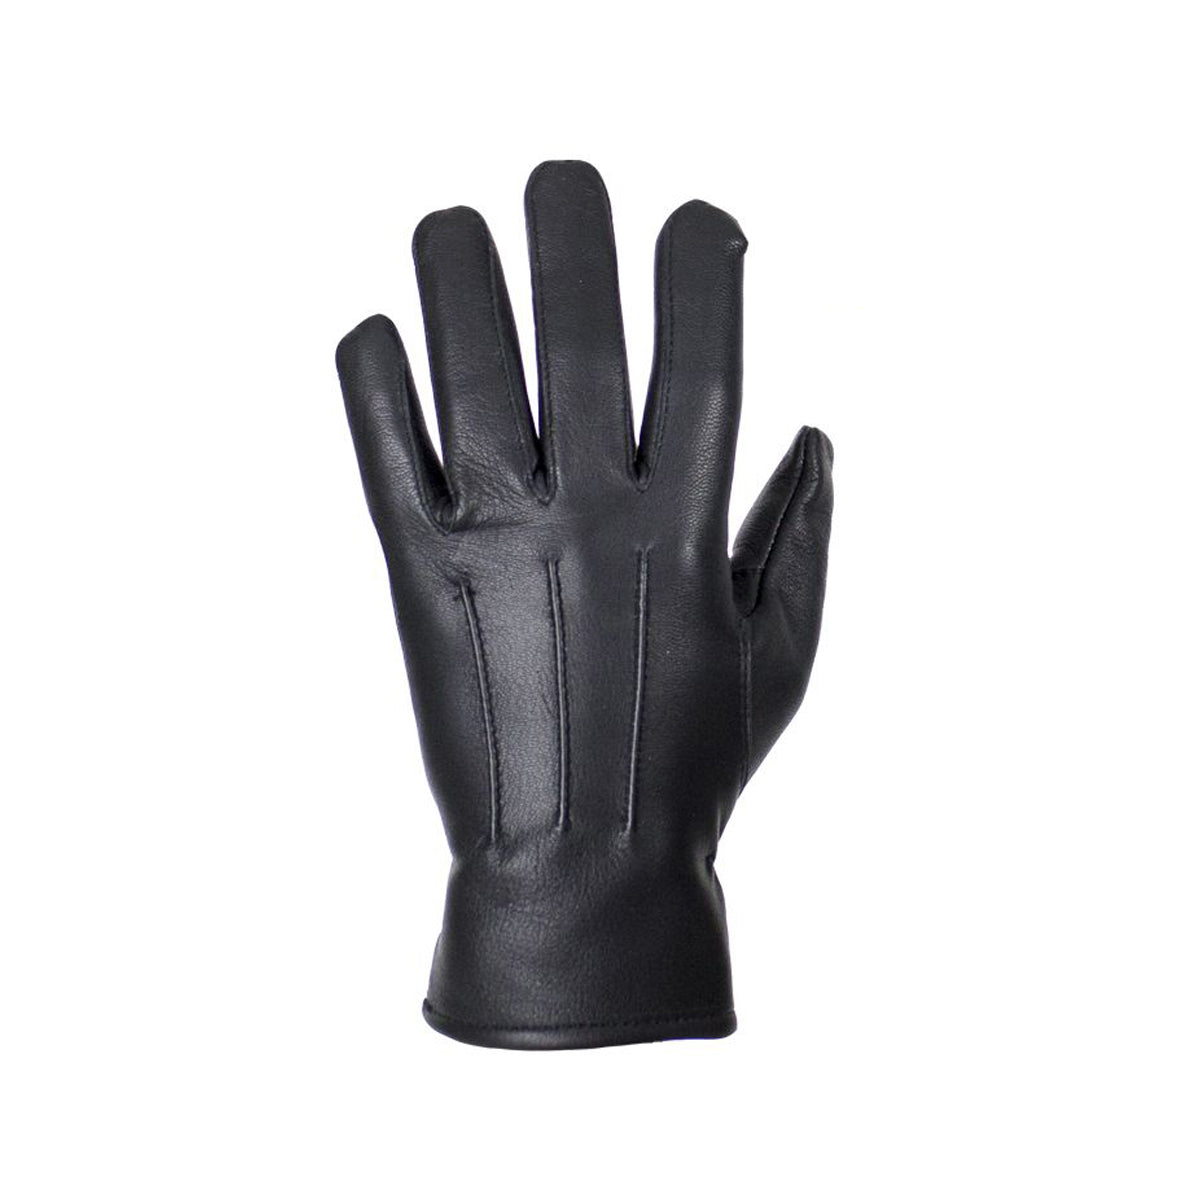 Ladies Deer Skin Leather Gloves - Black